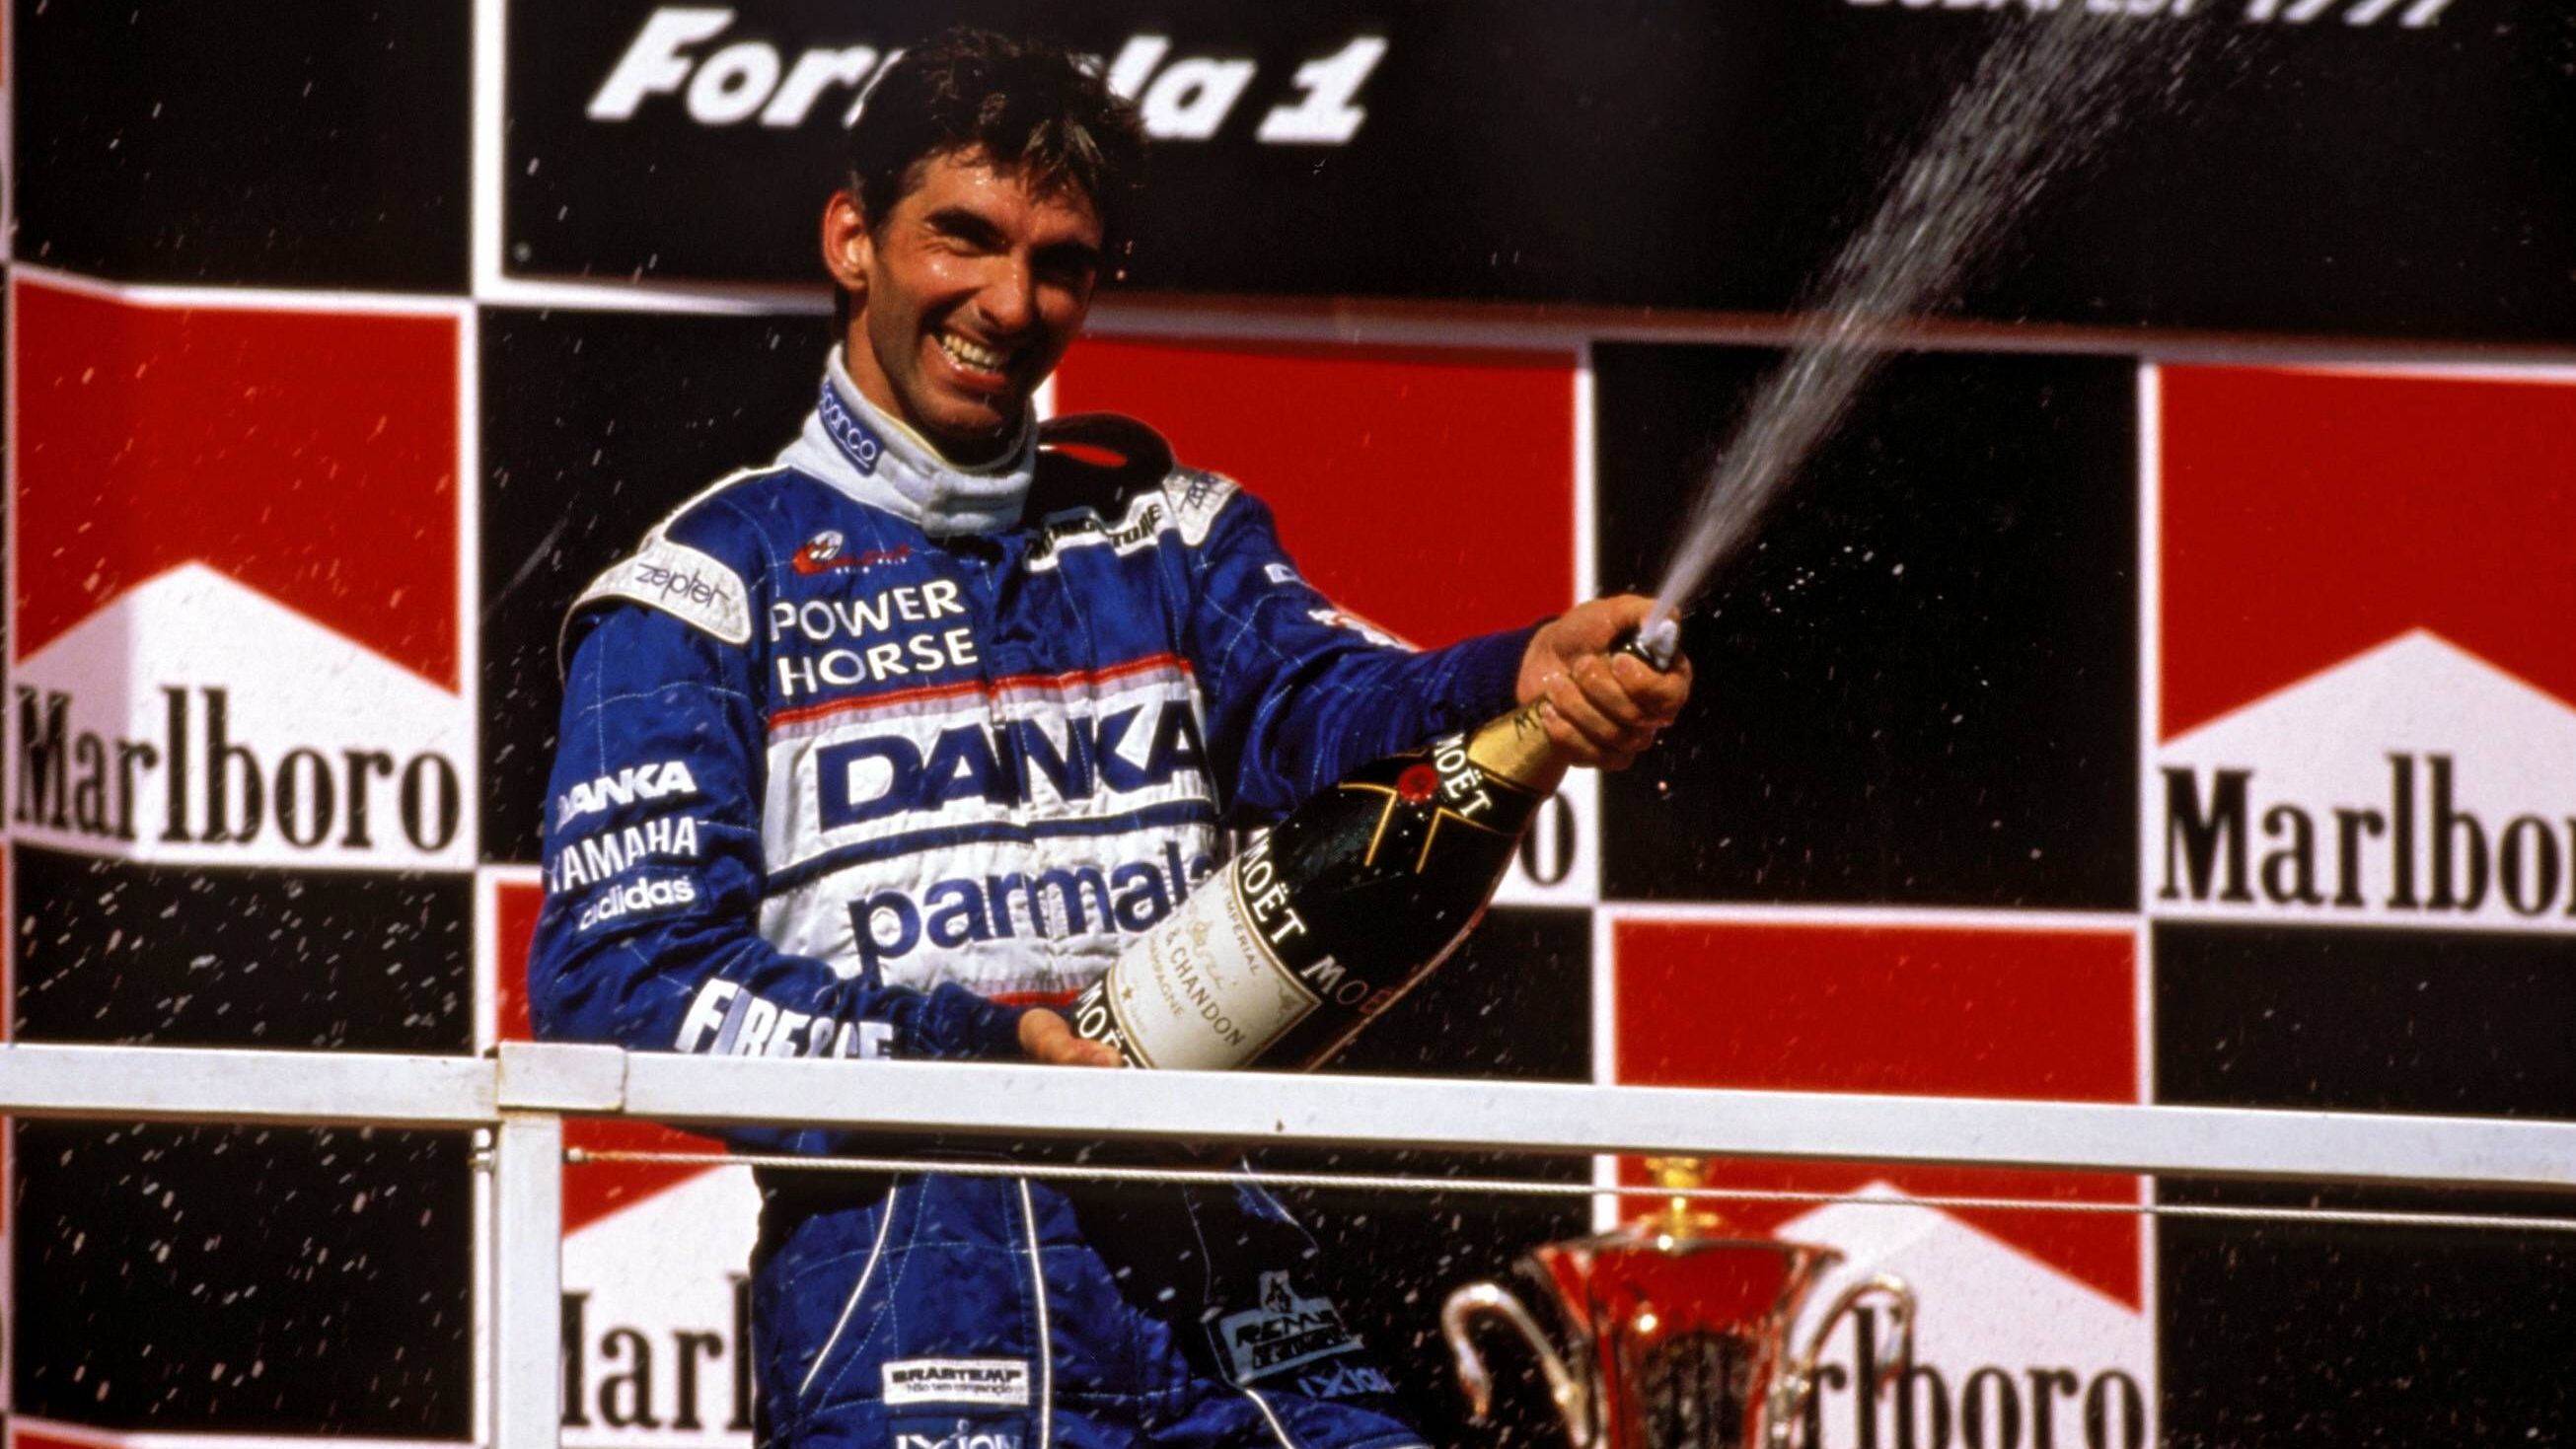 <strong>Damon Hill</strong><br>1996 feierte Damon Hill im Williams den Titel. Doch schon während der Saison war klar, dass er sein Cockpit würde räumen müssen. Eigentümer Frank Williams wollte lieber Heinz-Harald Frentzen, da half Hill auch sein Weltmeister-Titel nichts. Freie und attraktive Cockpits gab es nicht, schlussendlich ging es für ihn zu Arrows. Ein erfolgloses Kapitel, 1997 wurde er Zwölfter.